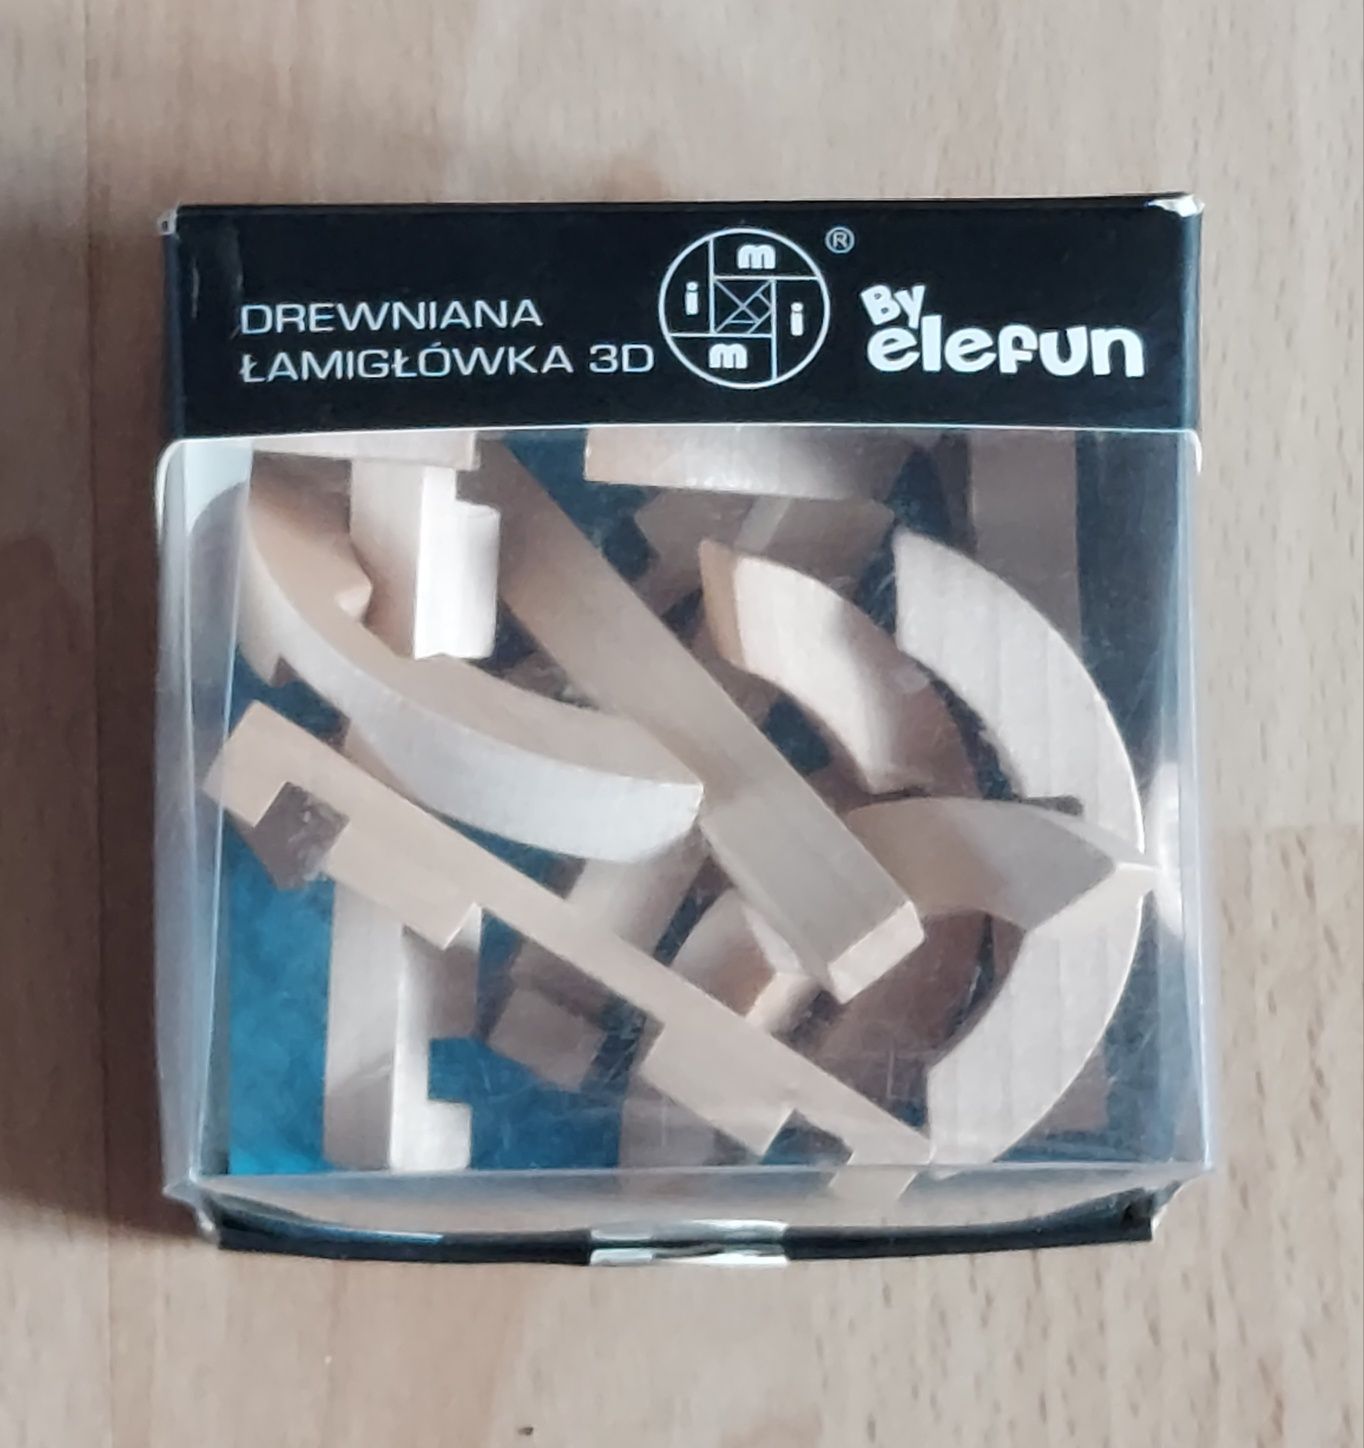 Drewniana łamigłówka 3D By Elefun